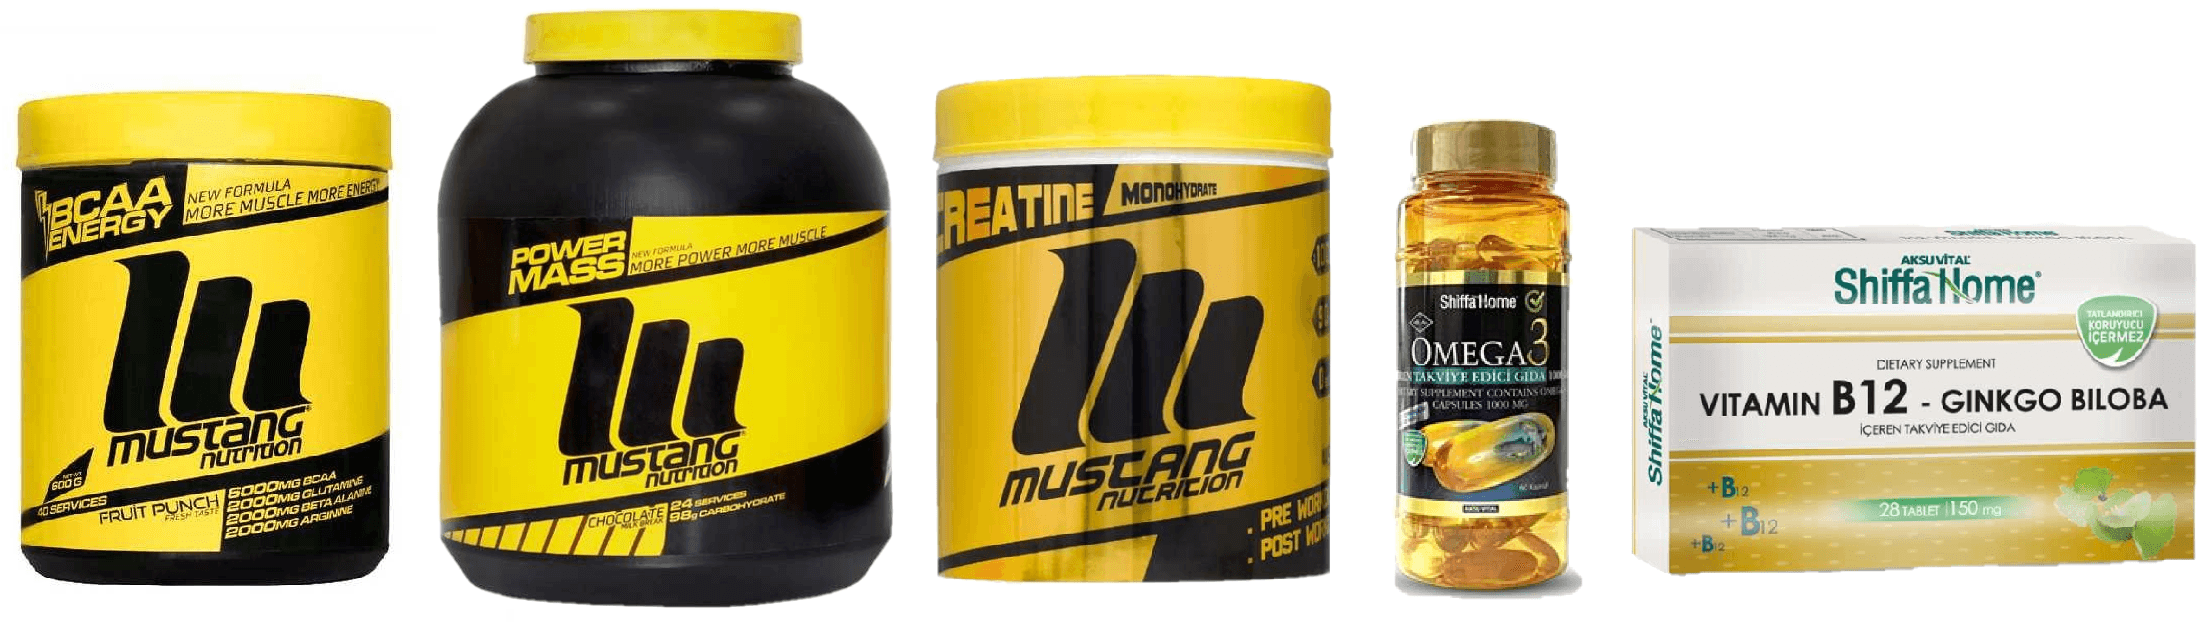 Sporculara Özel Mega Paket 5'li (Mustang Nutrition)